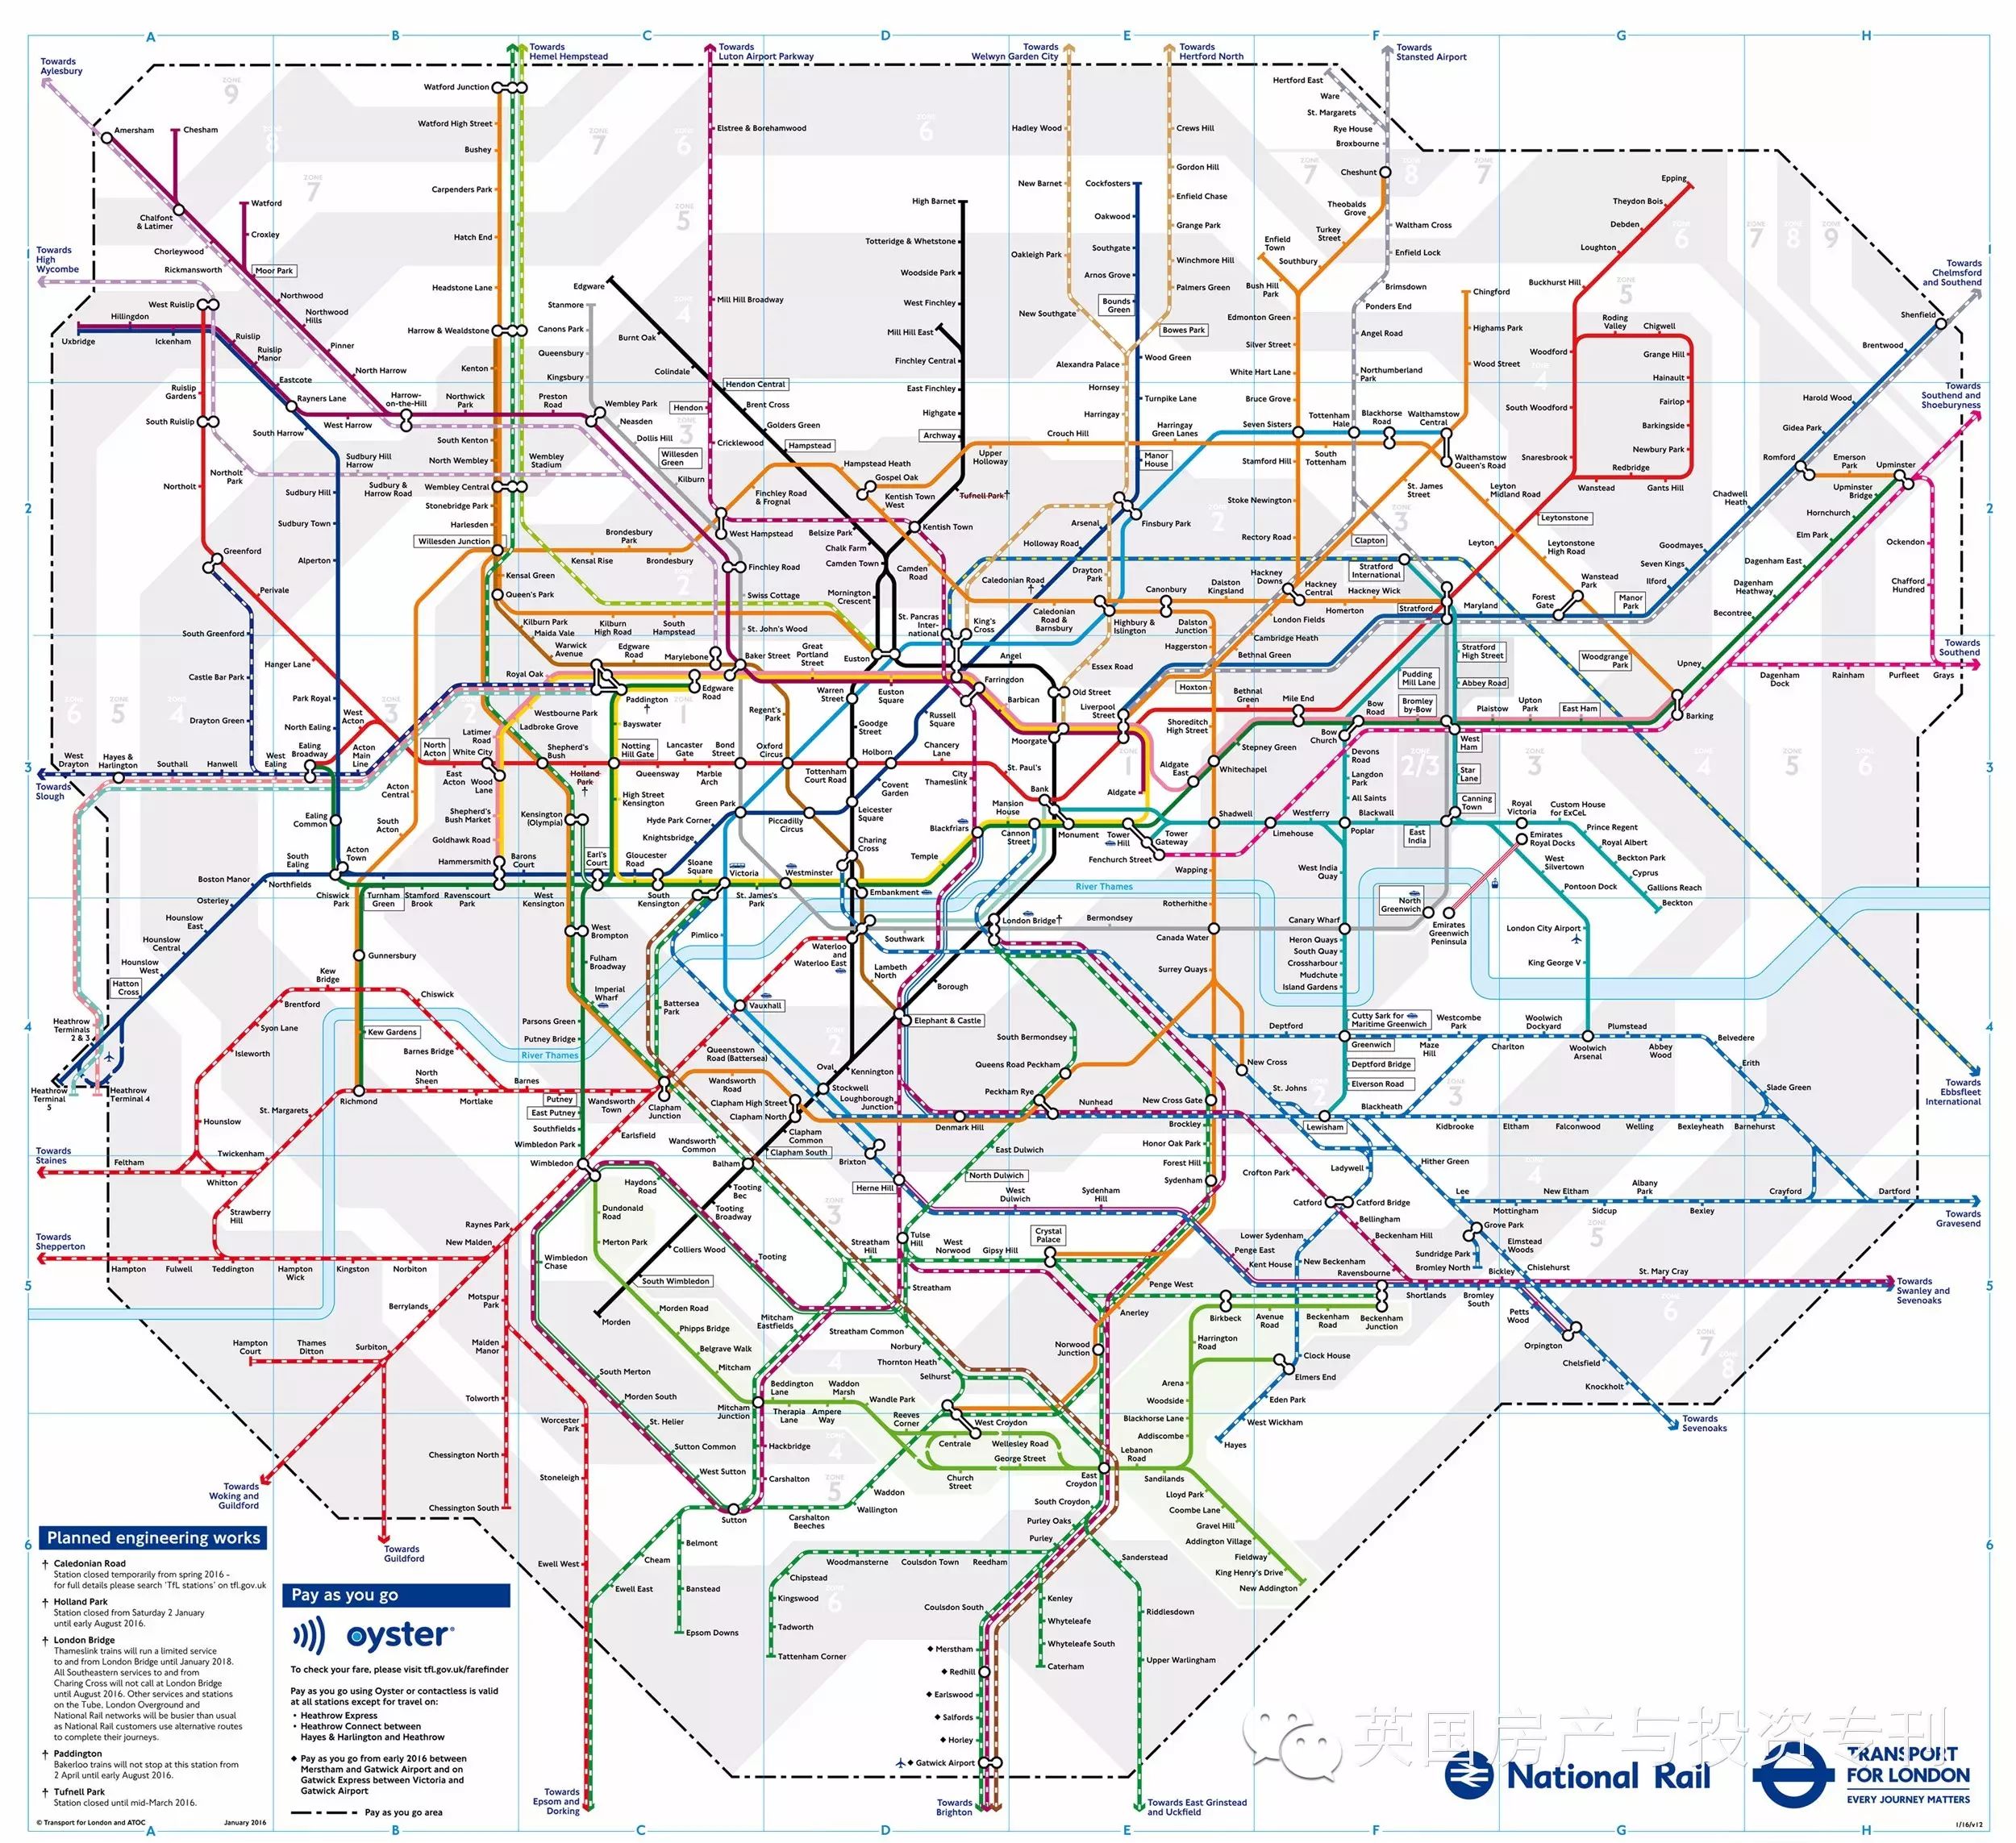 伦敦交通局公布最新轨道交通线路图, 包括牡蛎卡(oyster card)新增